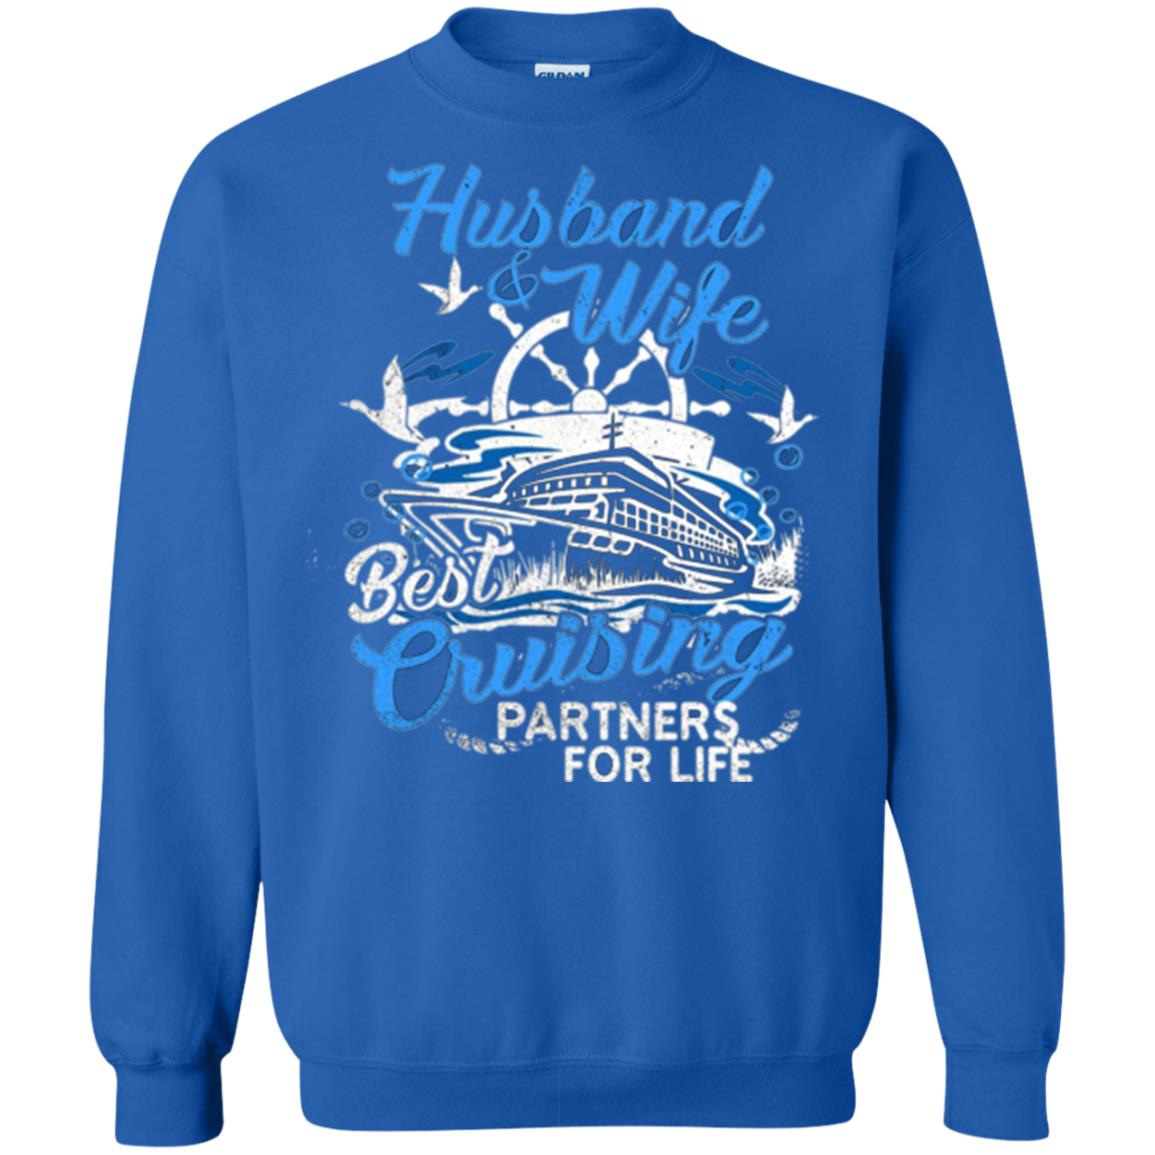 Inktee Store - Husband And Wife Cruising Partners Sweatshirt Image